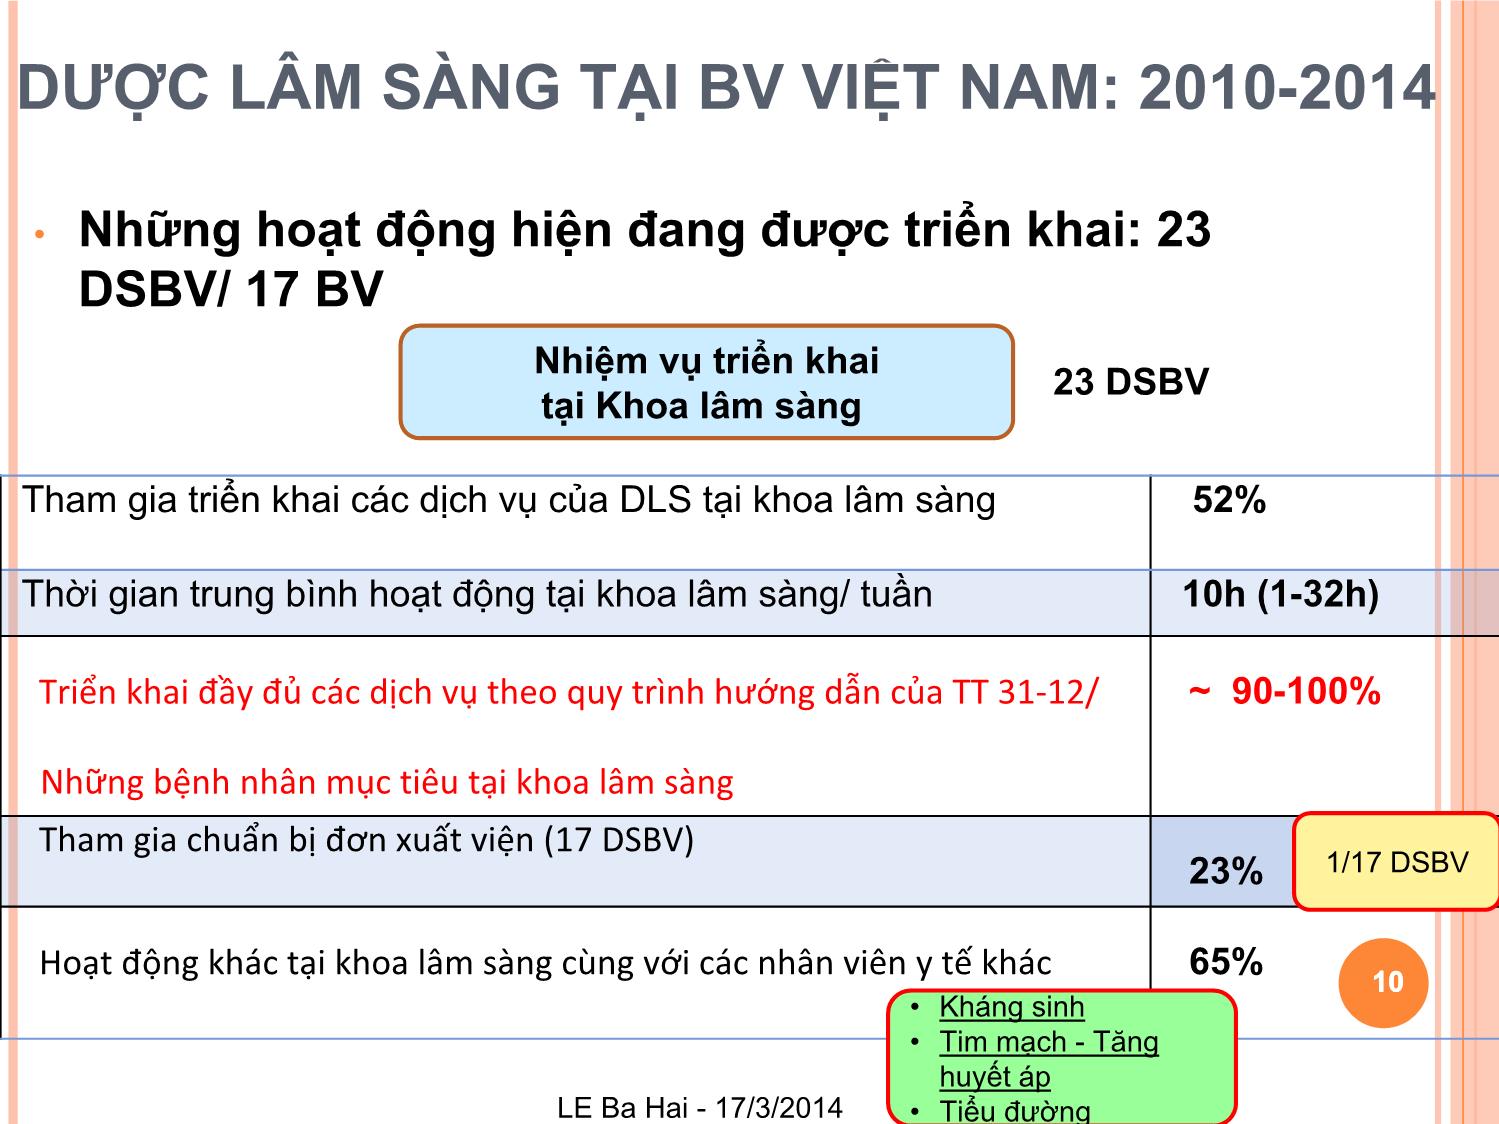 Dược lâm sàng tại bệnh viện Việt Nam: Khảo sát về những dịch vụ đang được triển khai của dược lâm sàng và cơ hội phát triển trang 10